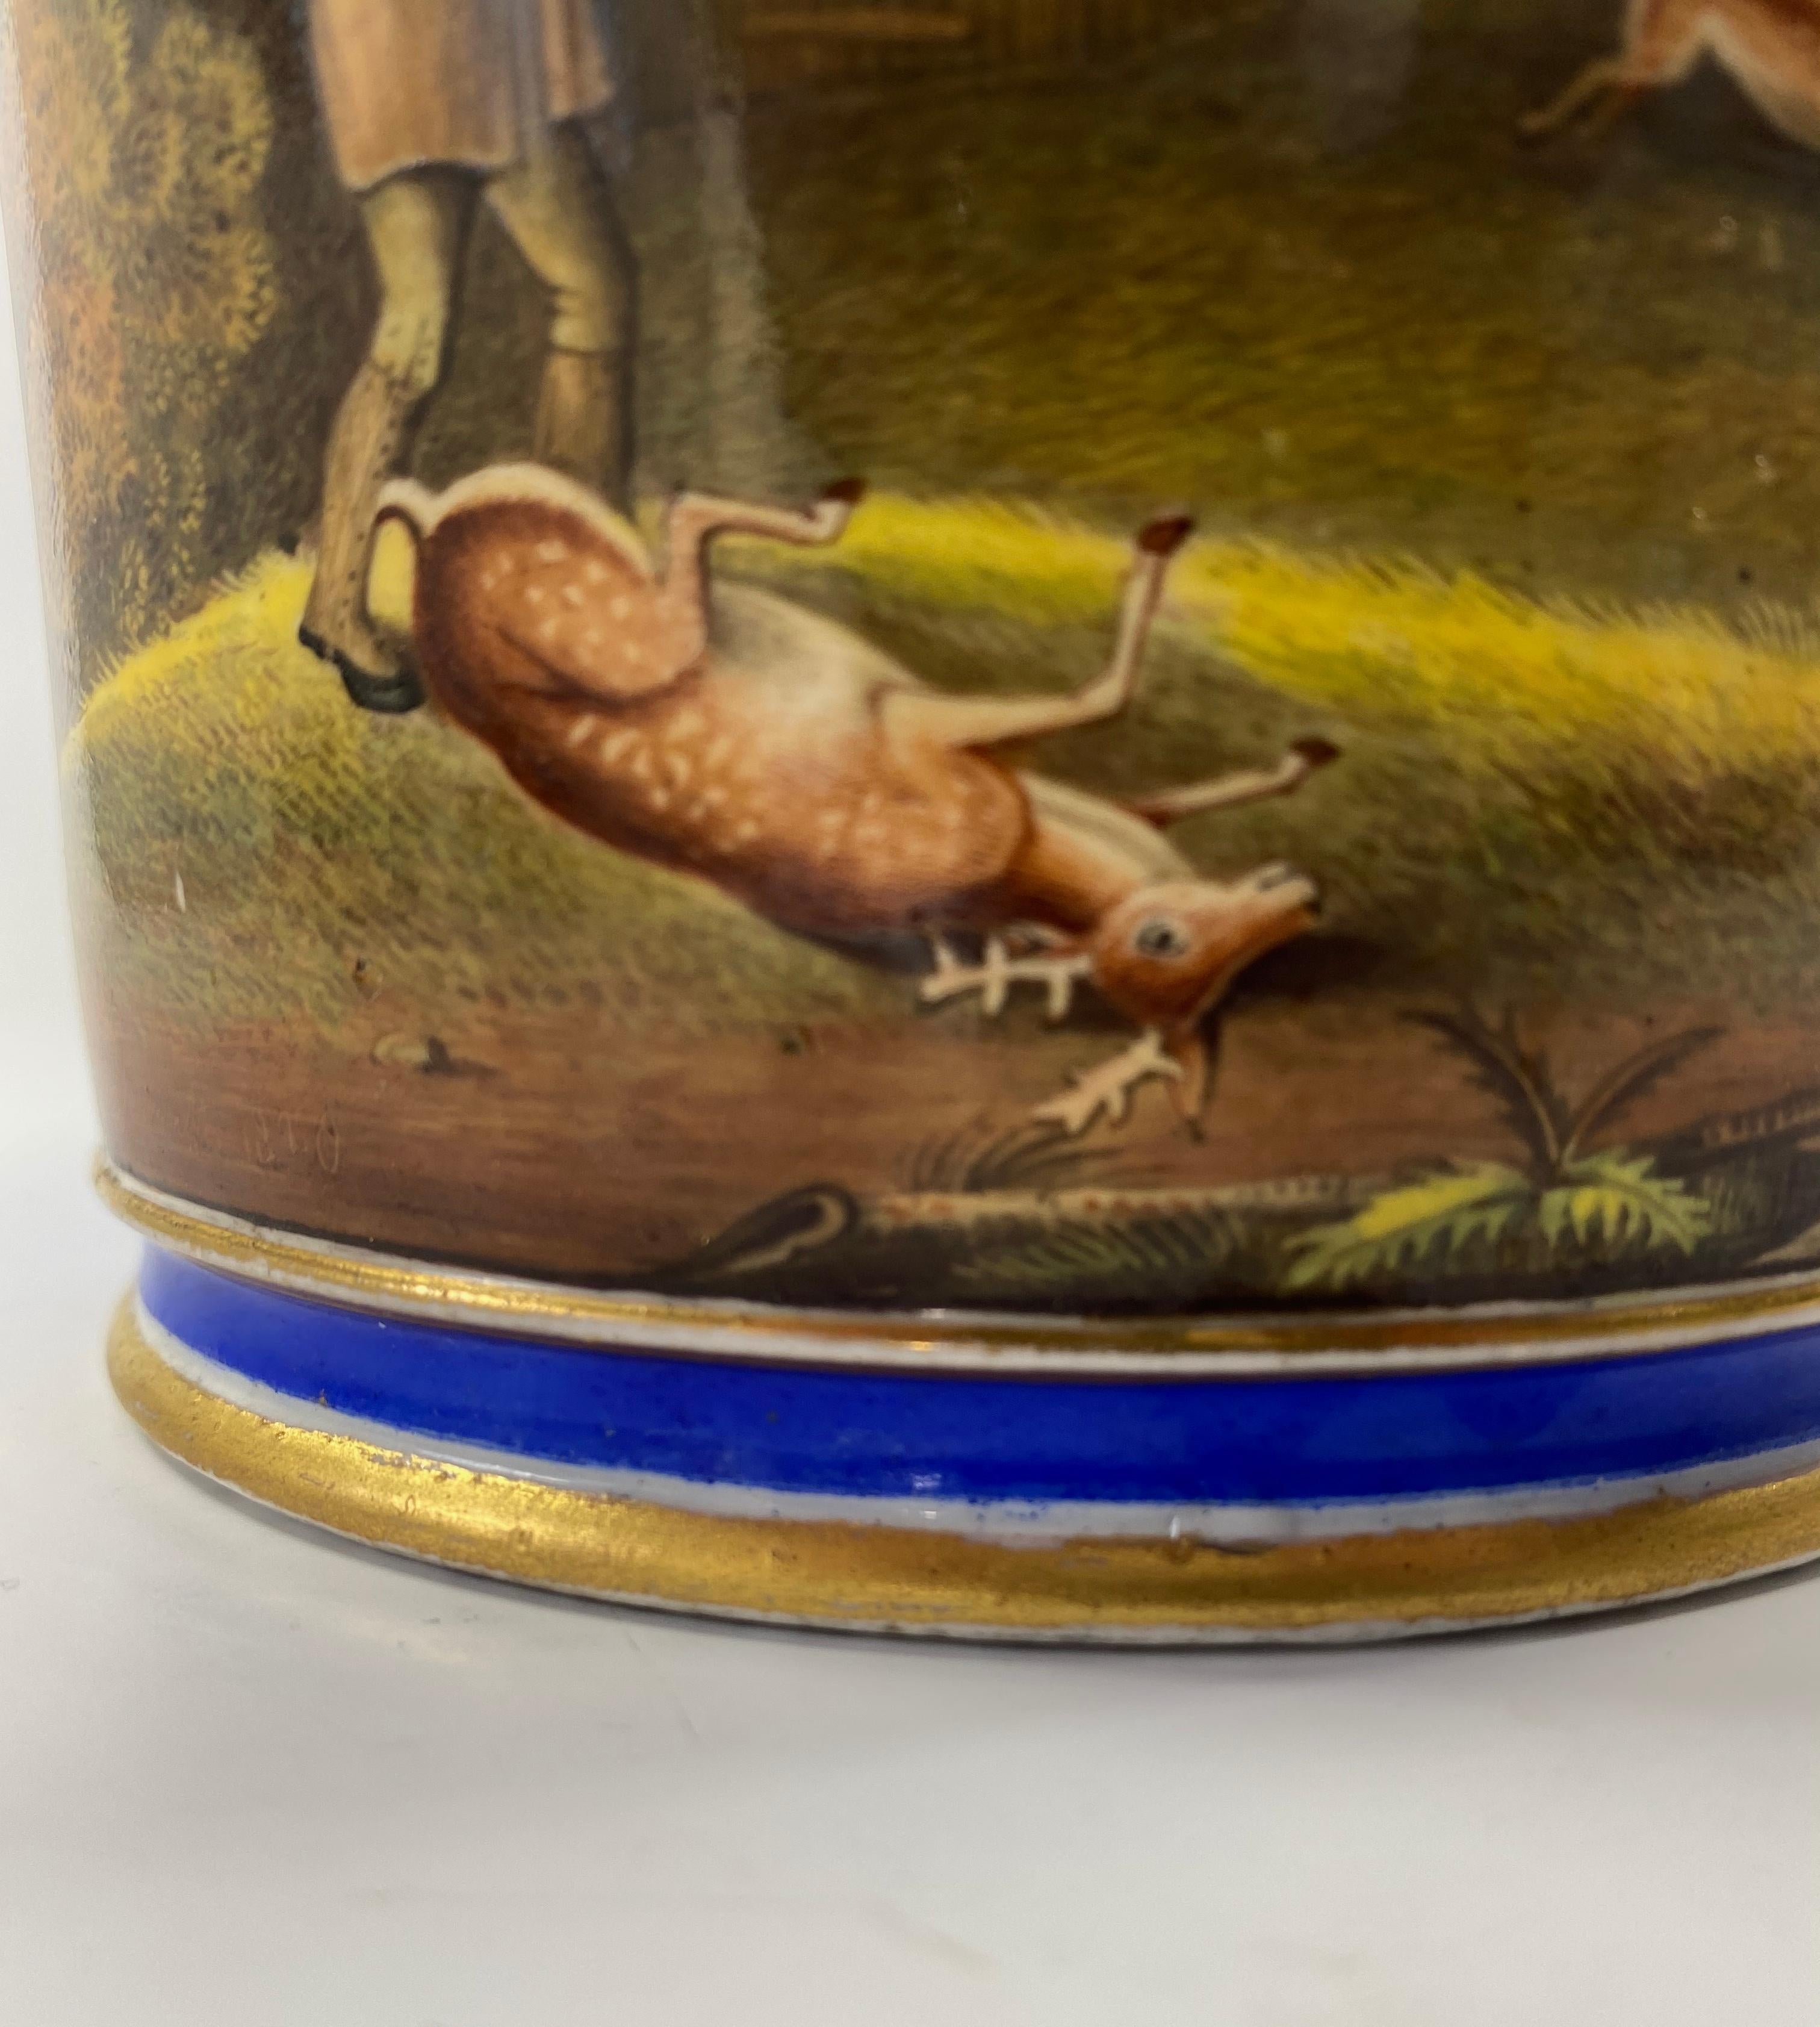 Coalport Porcelain Porter Mug, J.H. Smith, Dated 1820 For Sale 5